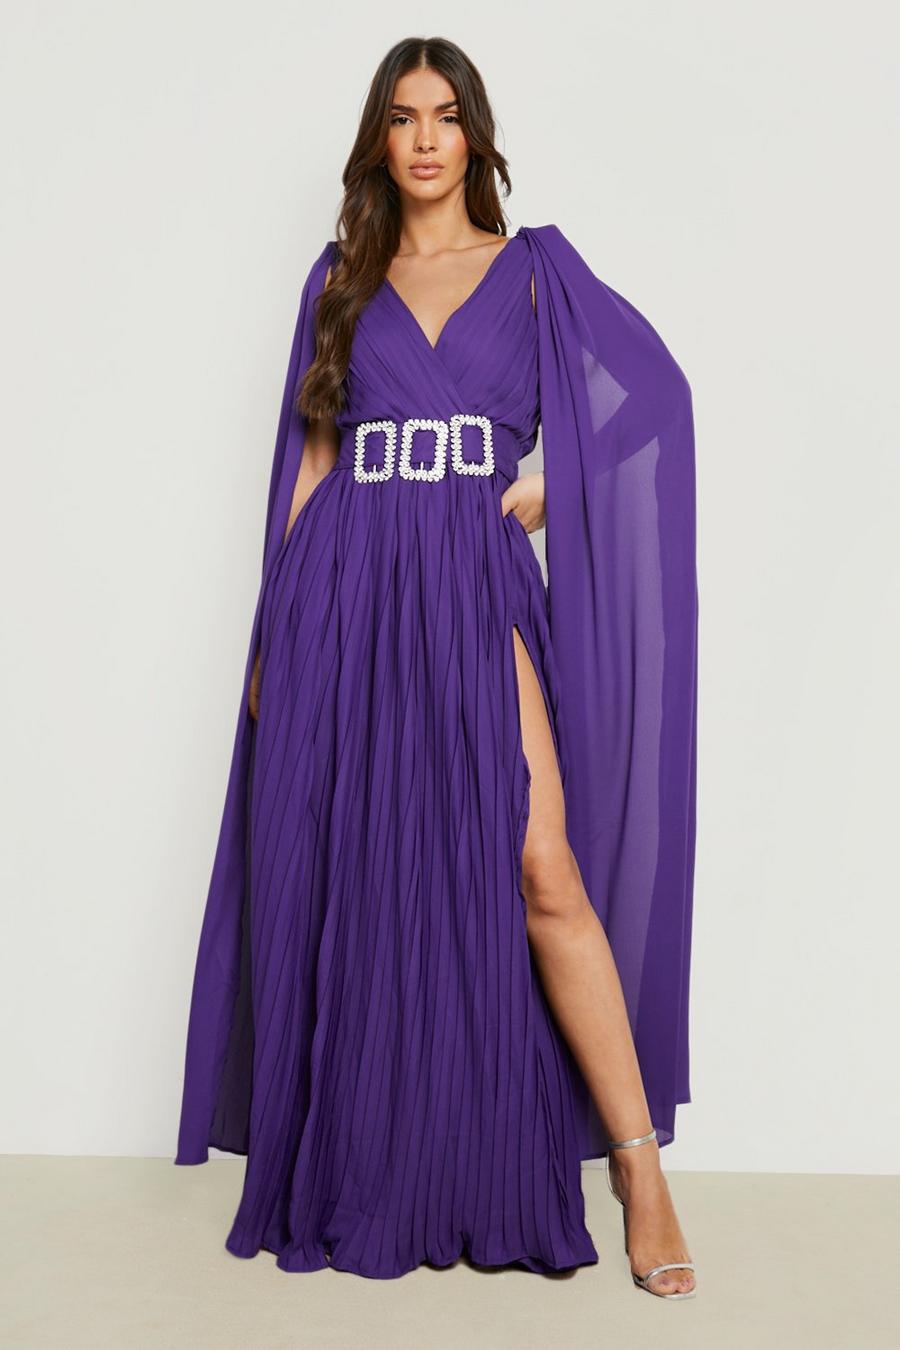 Jewel purple lila Långklänning med cape och strass